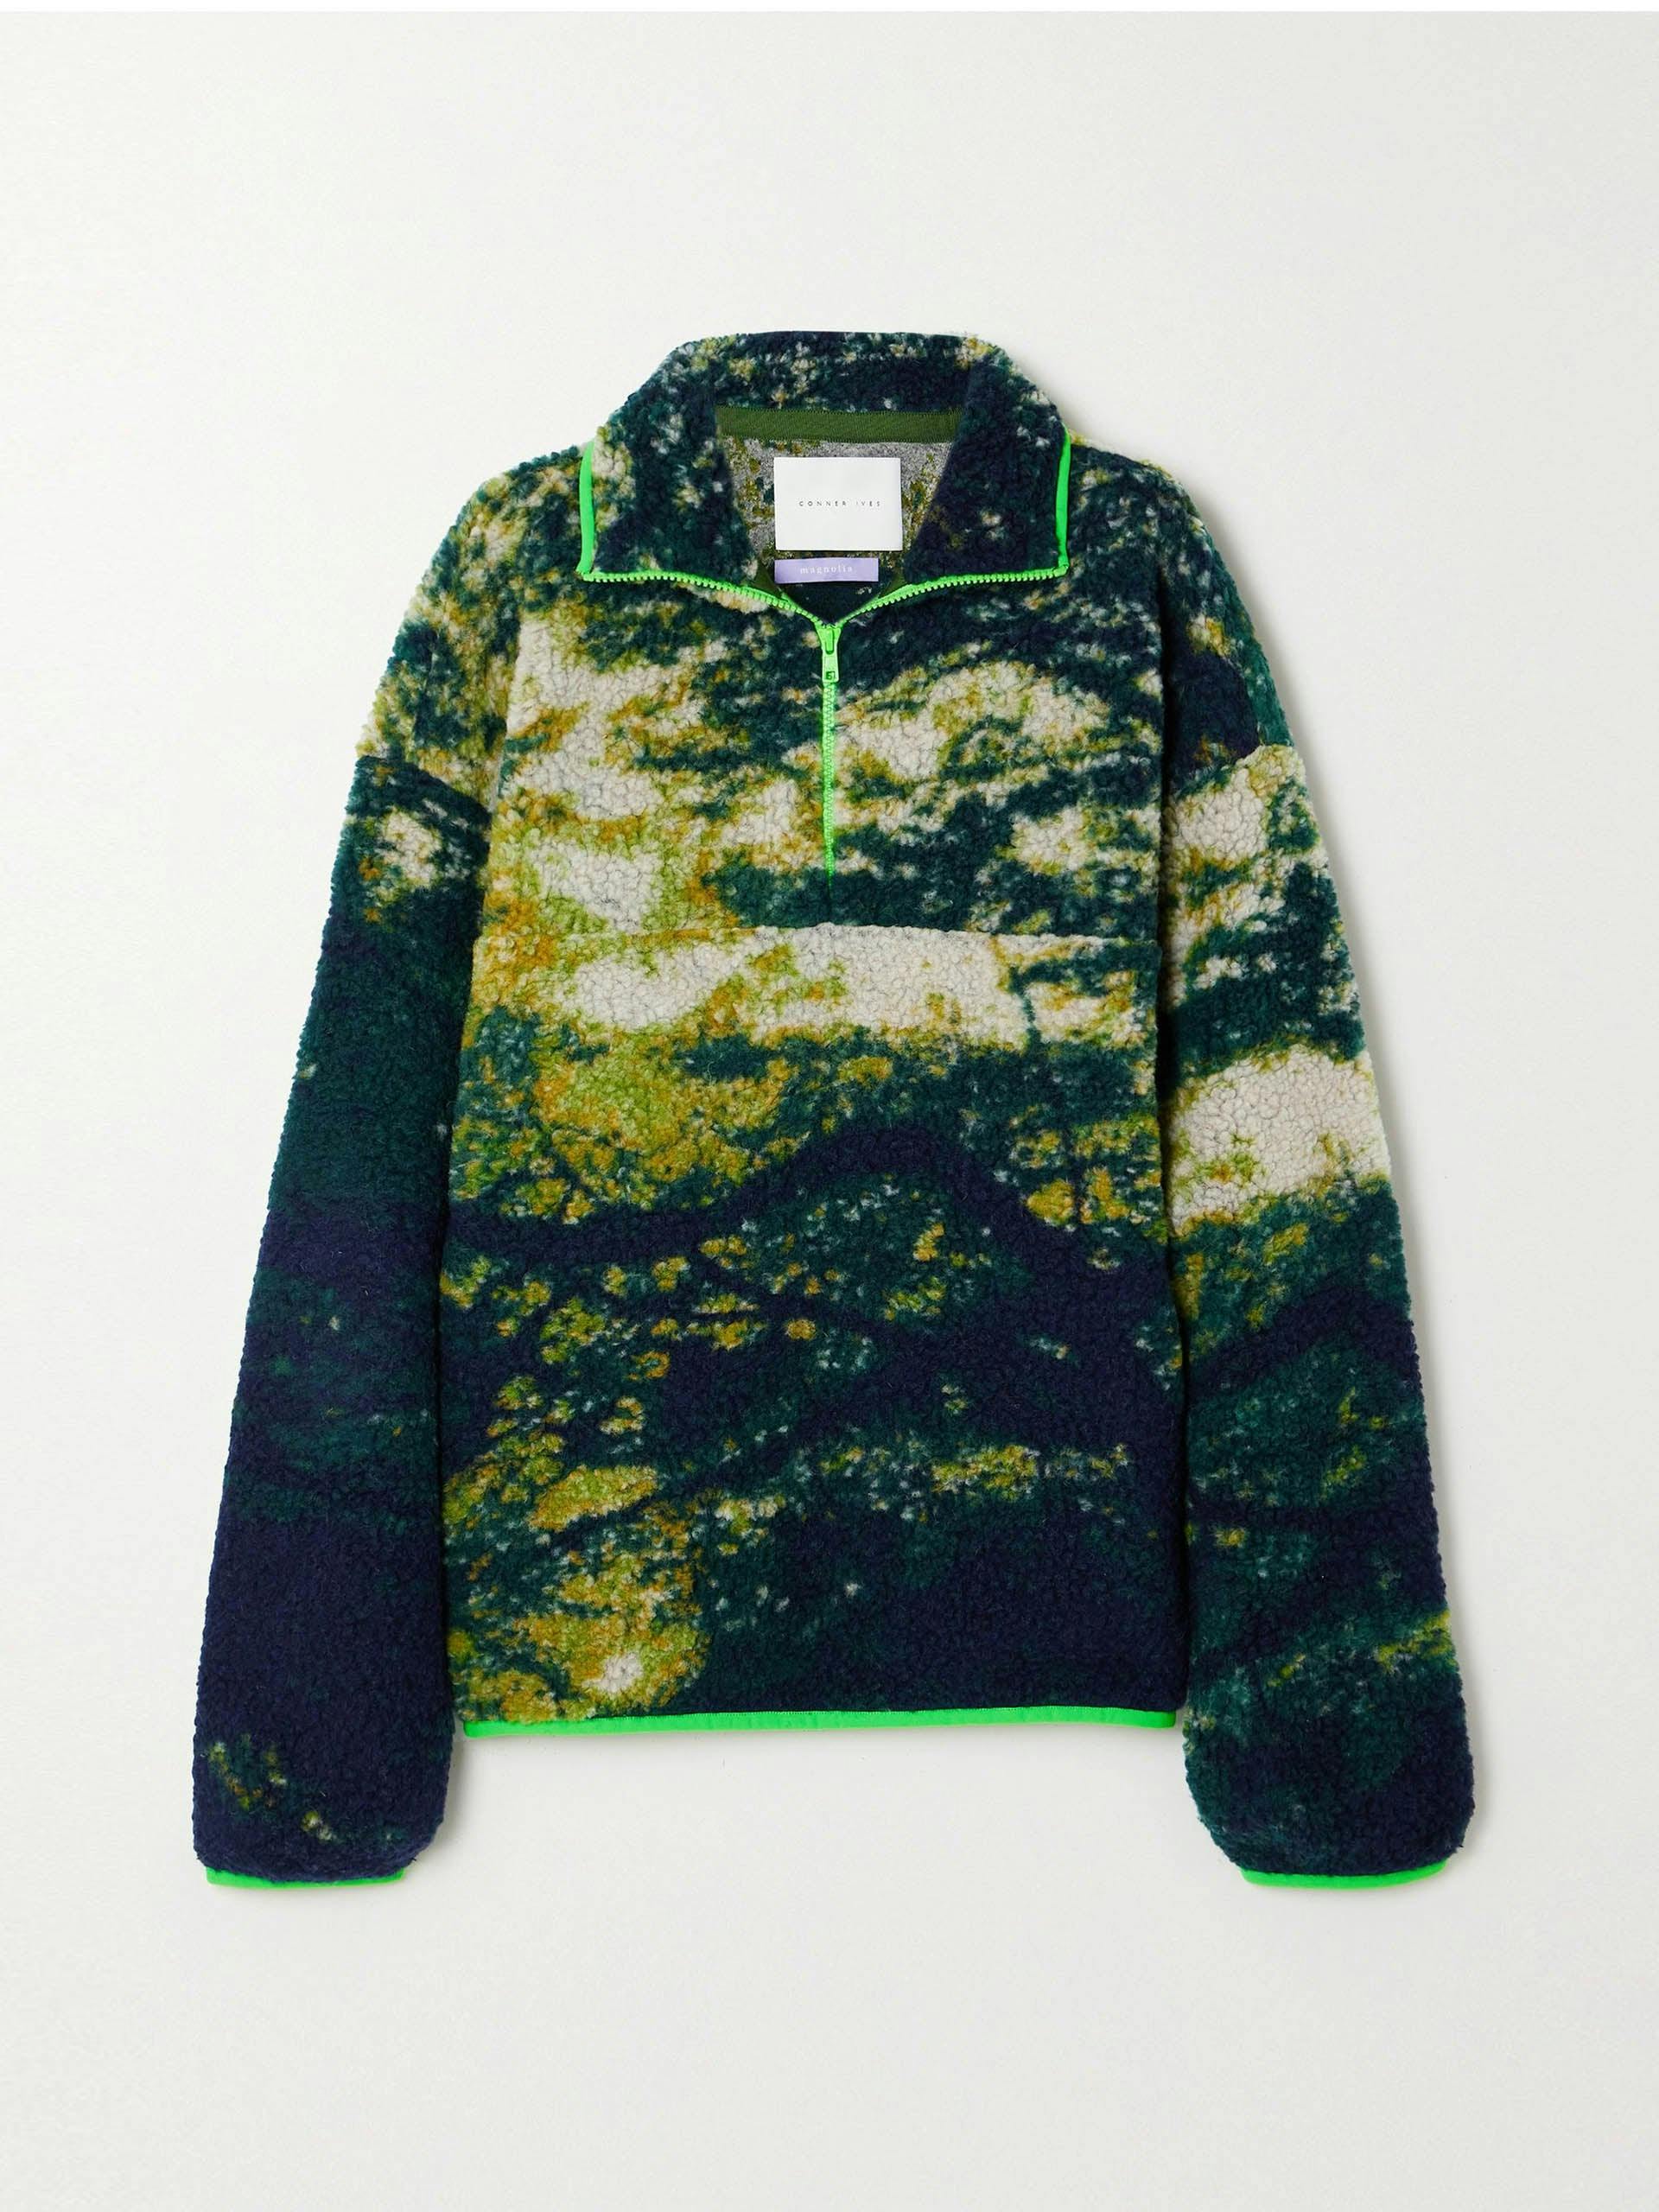 Printed fleece half-zip sweater